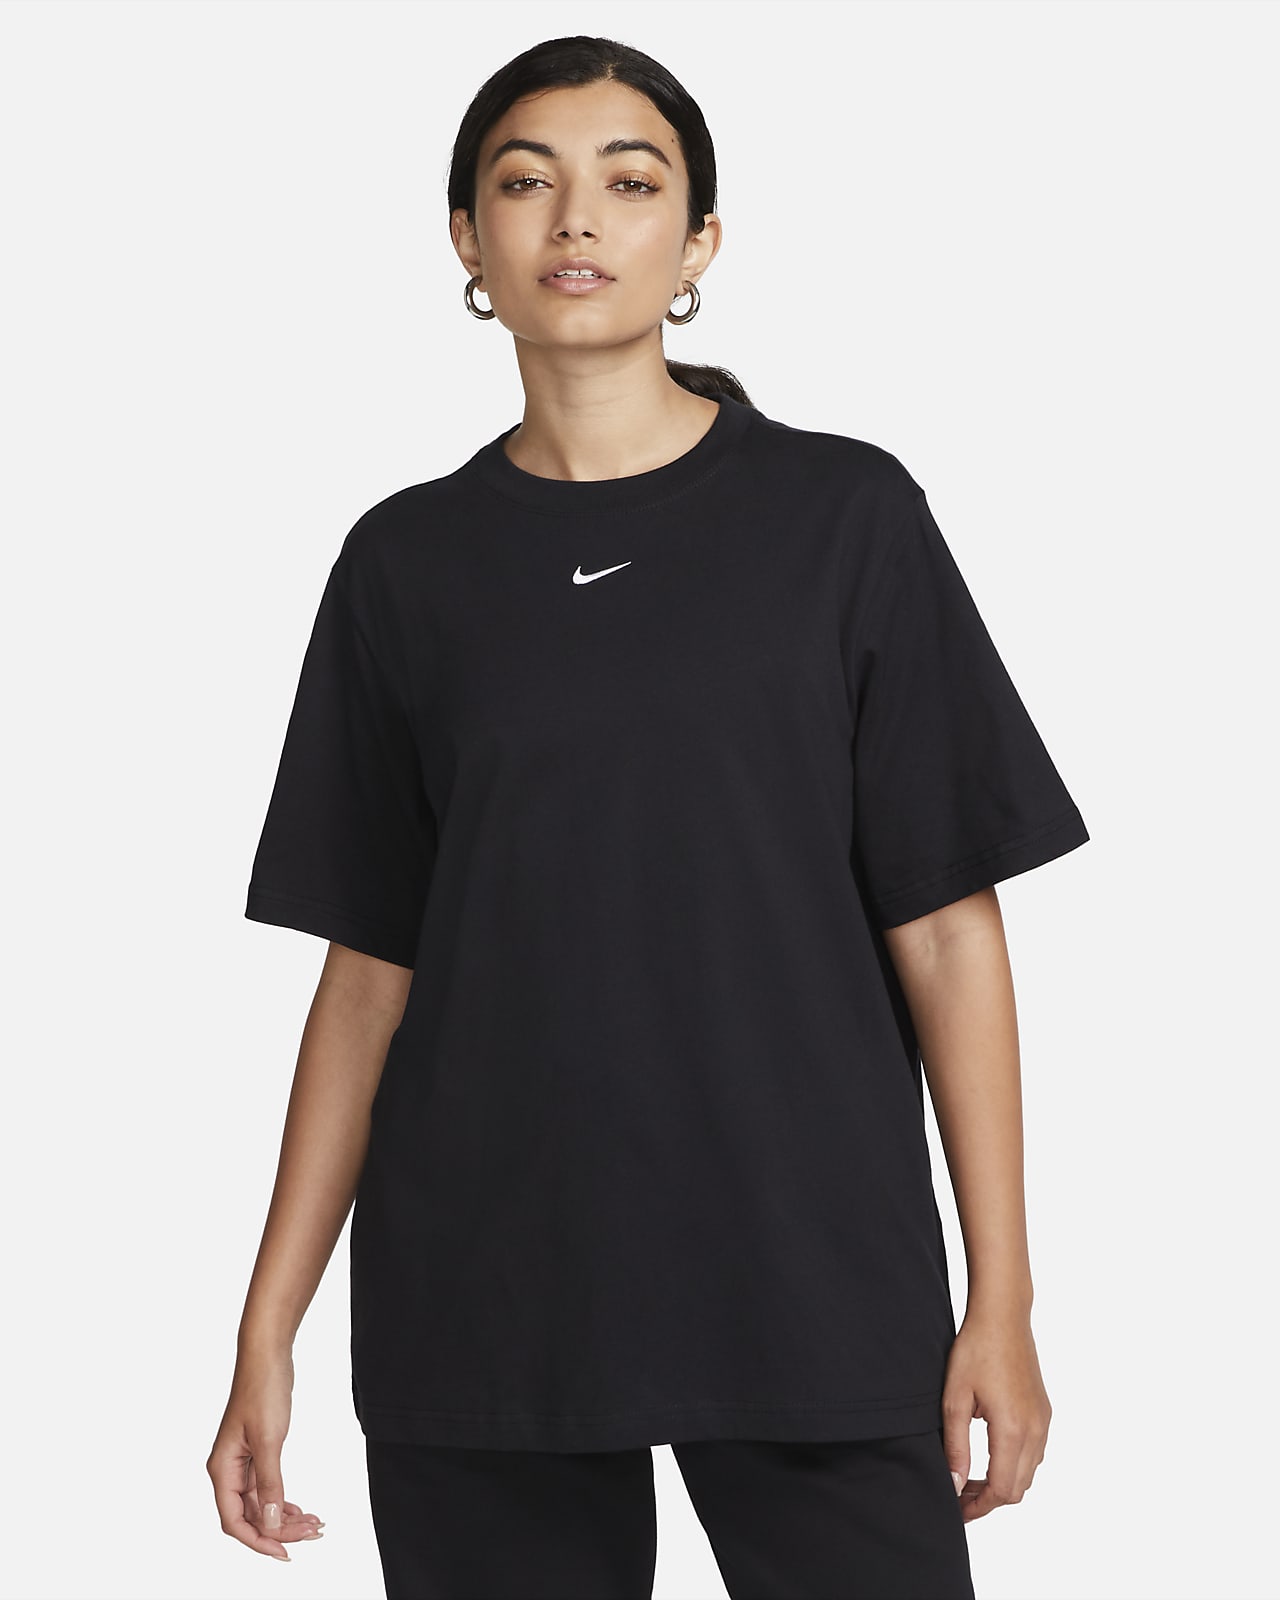 Playera para mujer Nike Sportswear Essential